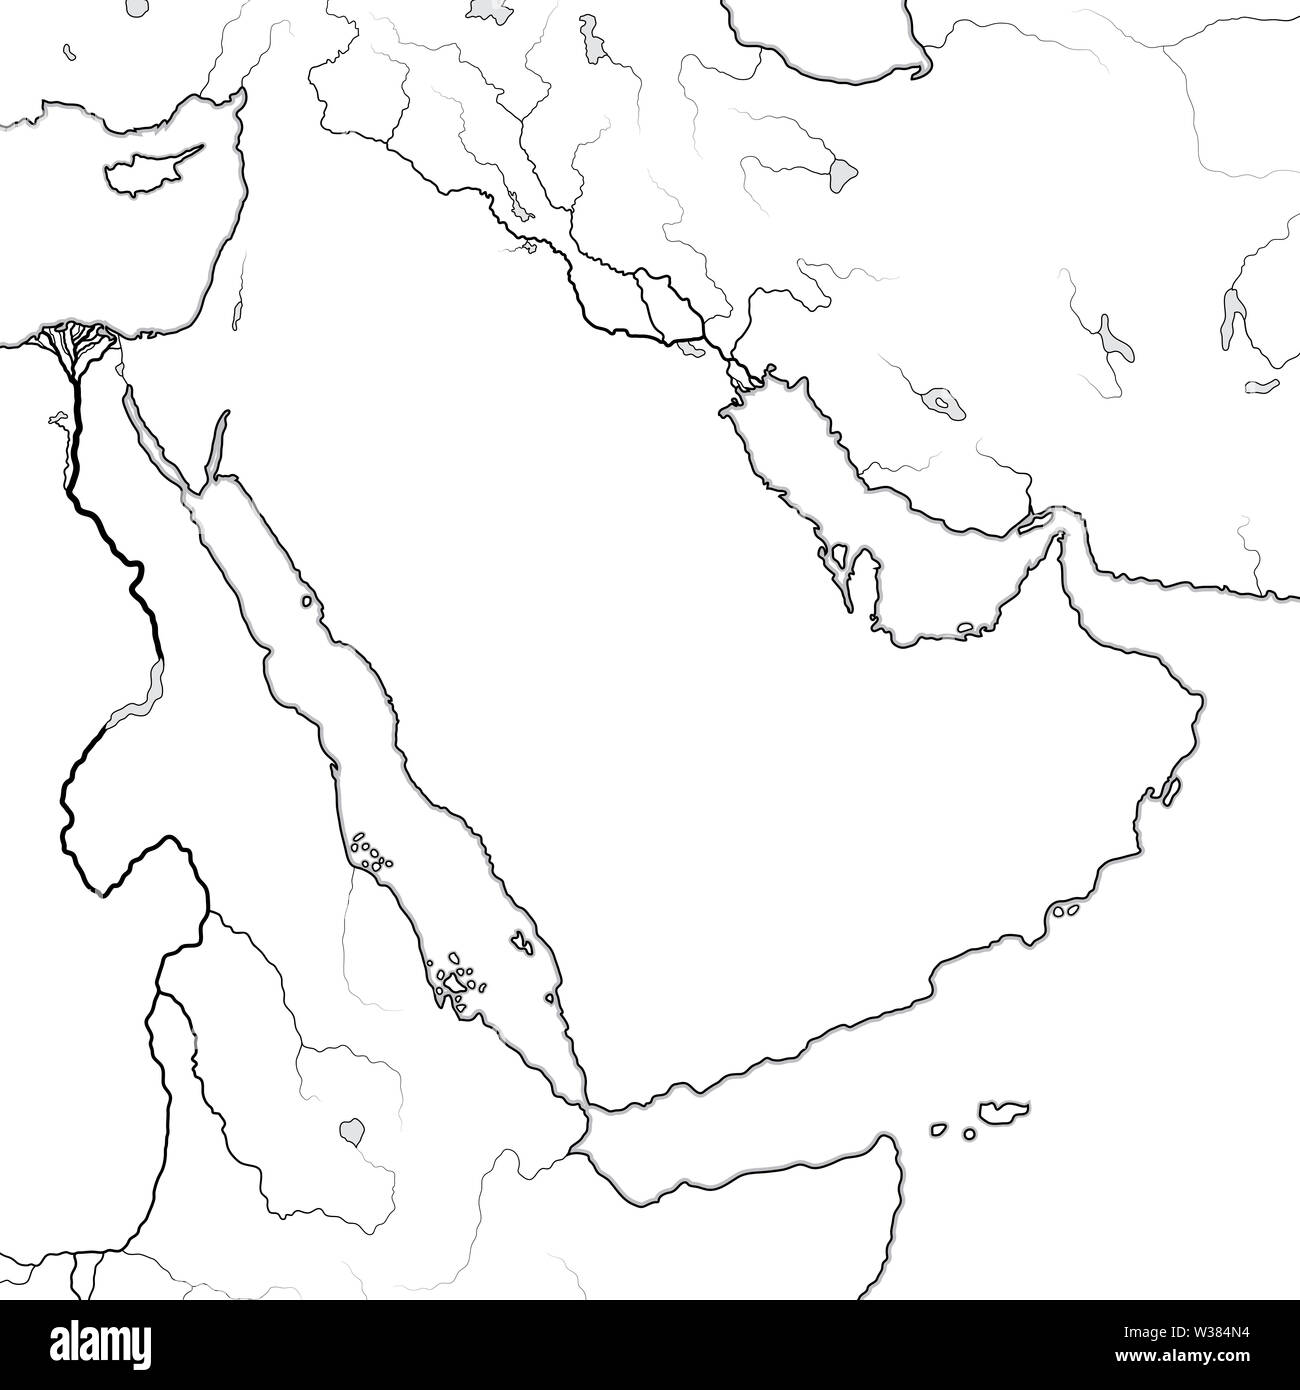 Carte mondiale de la péninsule arabe : le Moyen-Orient, monde arabe, l'Unis, l'Arabie saoudite, l'Iraq, la Syrie, la Mésopotamie, la Perse, le Golfe persique, mer Rouge. Banque D'Images